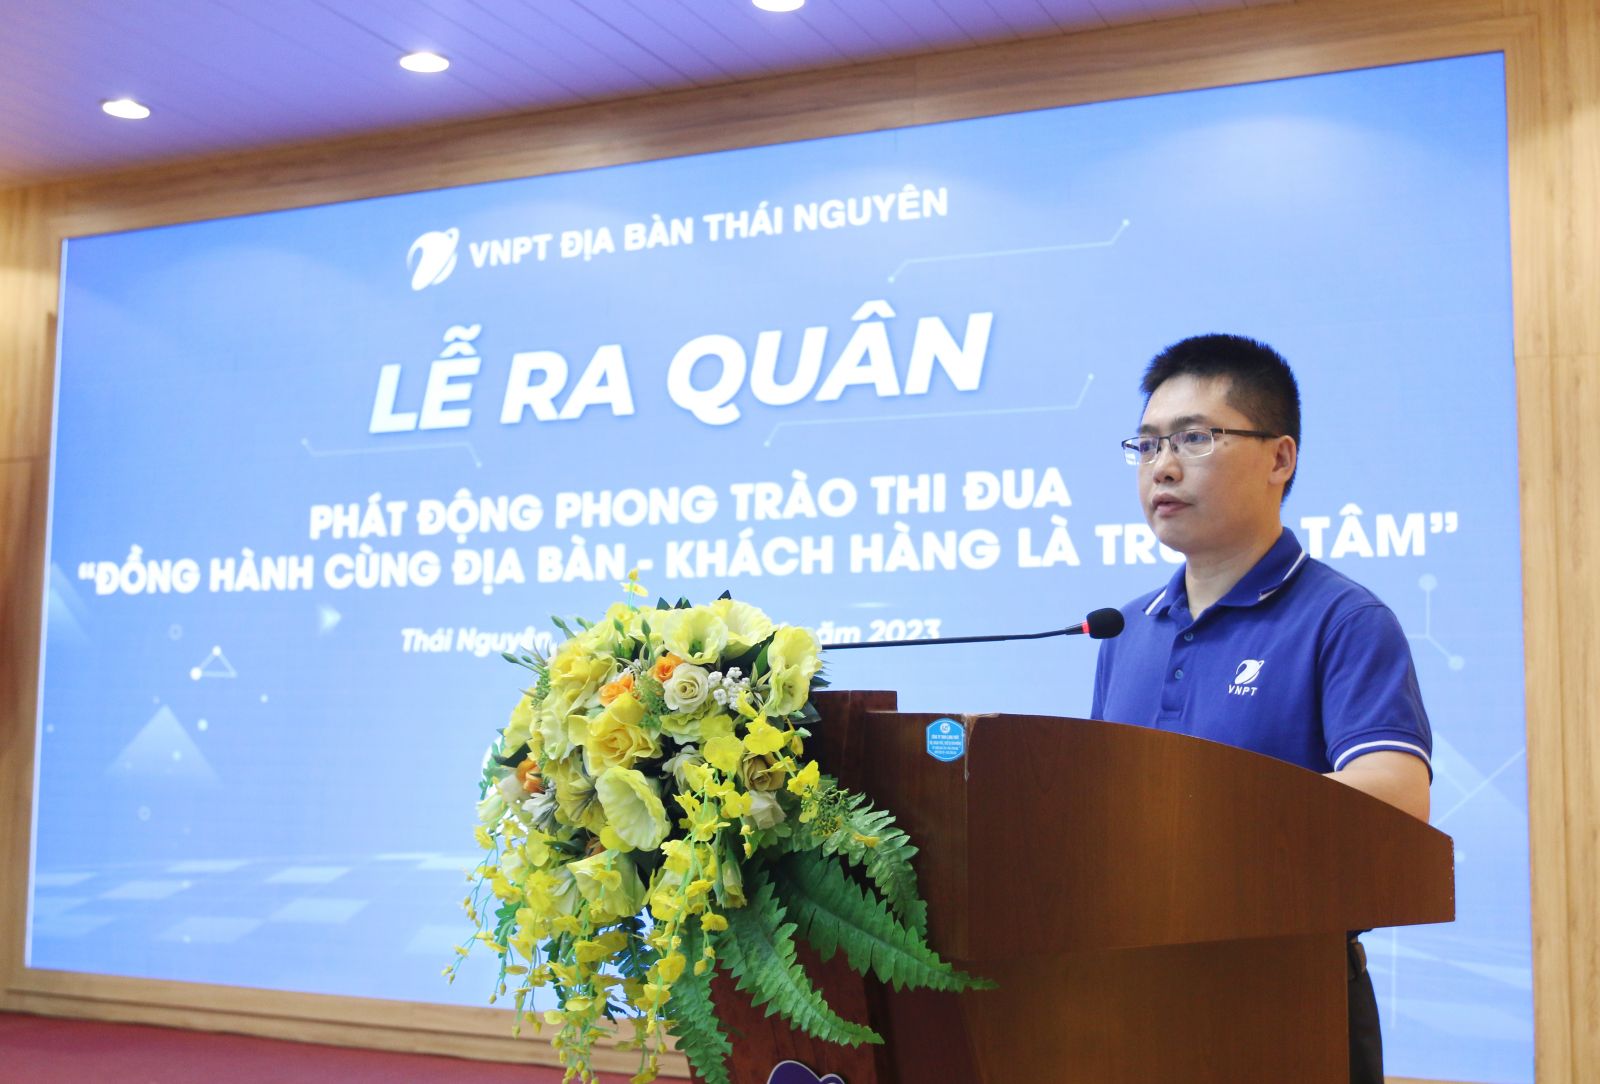 Đồng chí Lục Vũ Khanh  – Bí thư Đảng ủy, Trưởng đại diện VNPT trên địa bàn Thái Nguyên, Giám đốc Viễn thông Thái Nguyên phát biểu tại Lễ ra quân